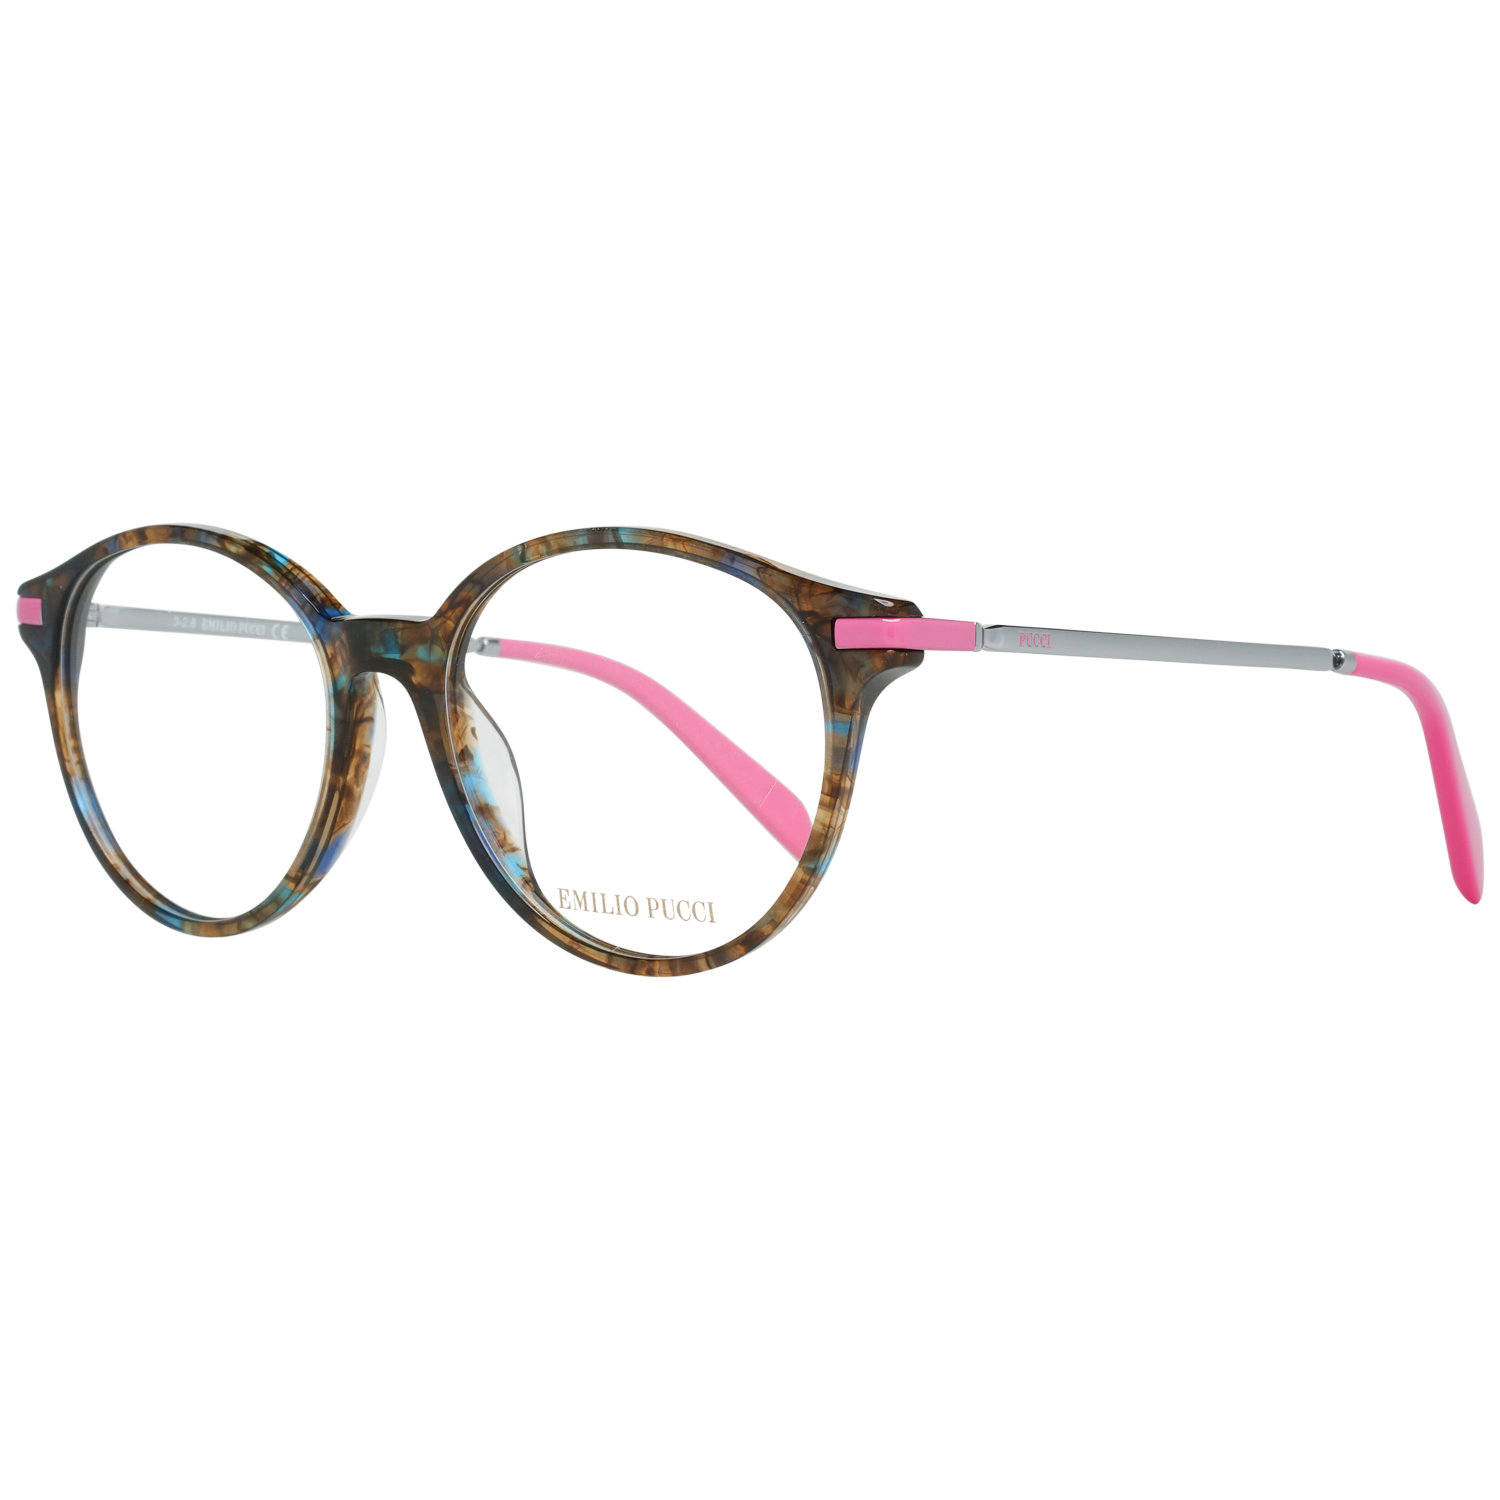 Emilio Pucci Frames Emilio Pucci Optical Frame EP5105 055 52 Eyeglasses Eyewear UK USA Australia 